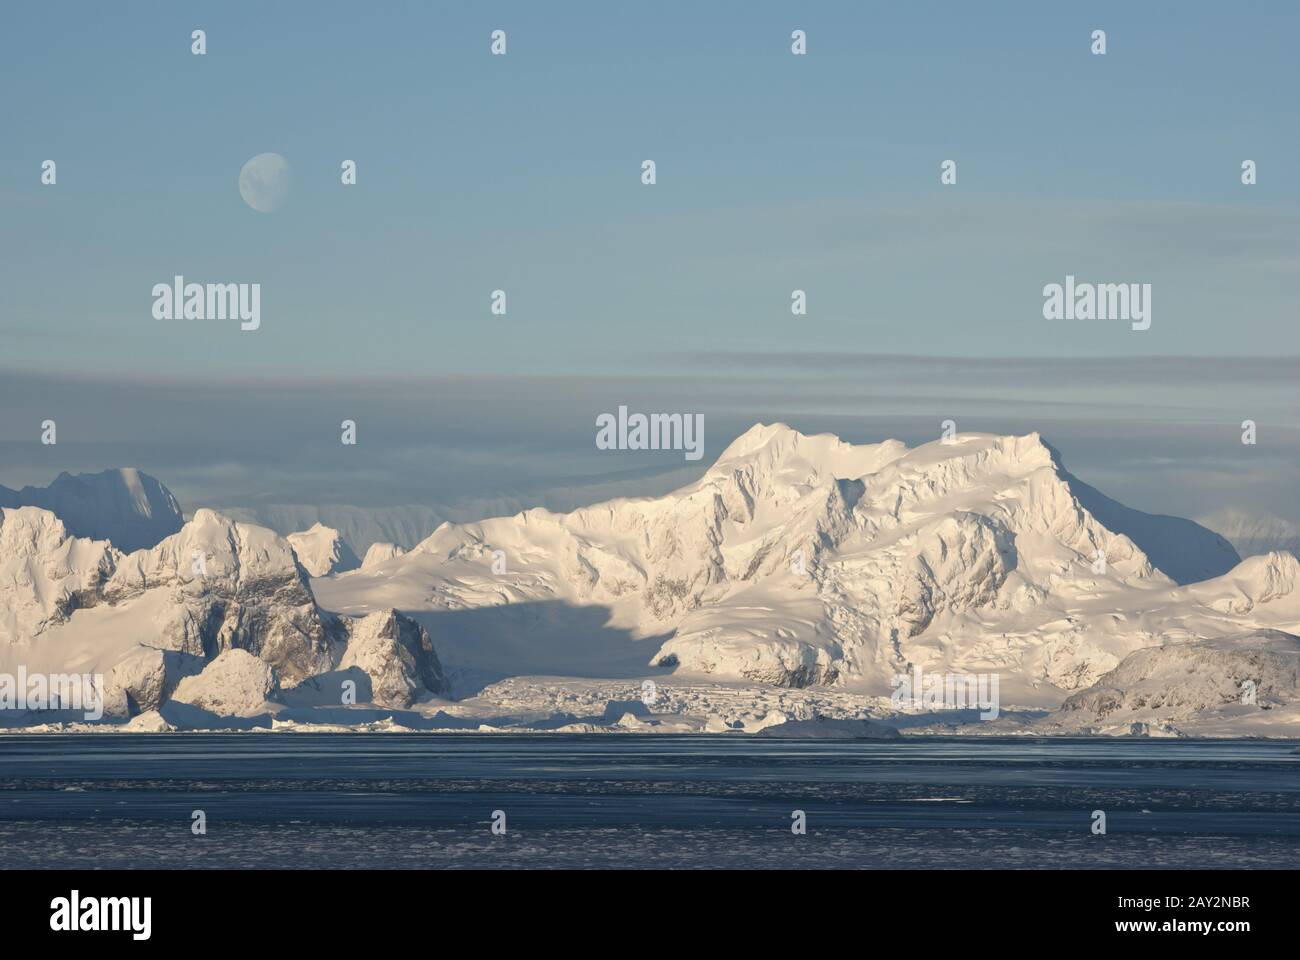 Niedriger antarktischer Berg, auf dem der Mond zu sehen ist. Stockfoto